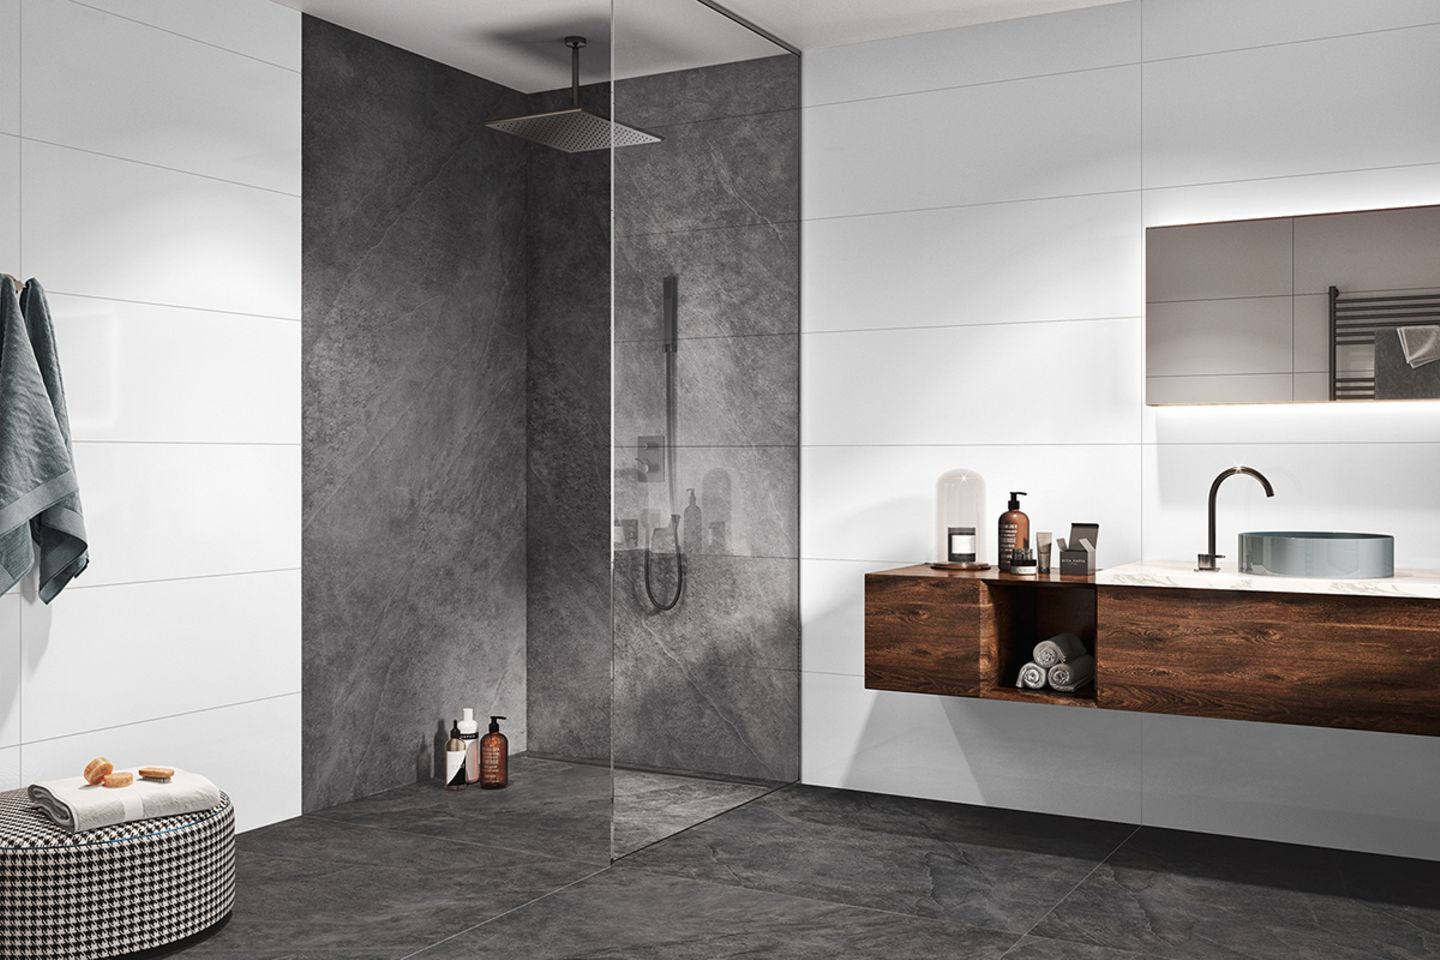 Kontrastreiche Dusche In Grau Und Weiß - [Schöner Wohnen] throughout Graue Fliesen Badezimmer